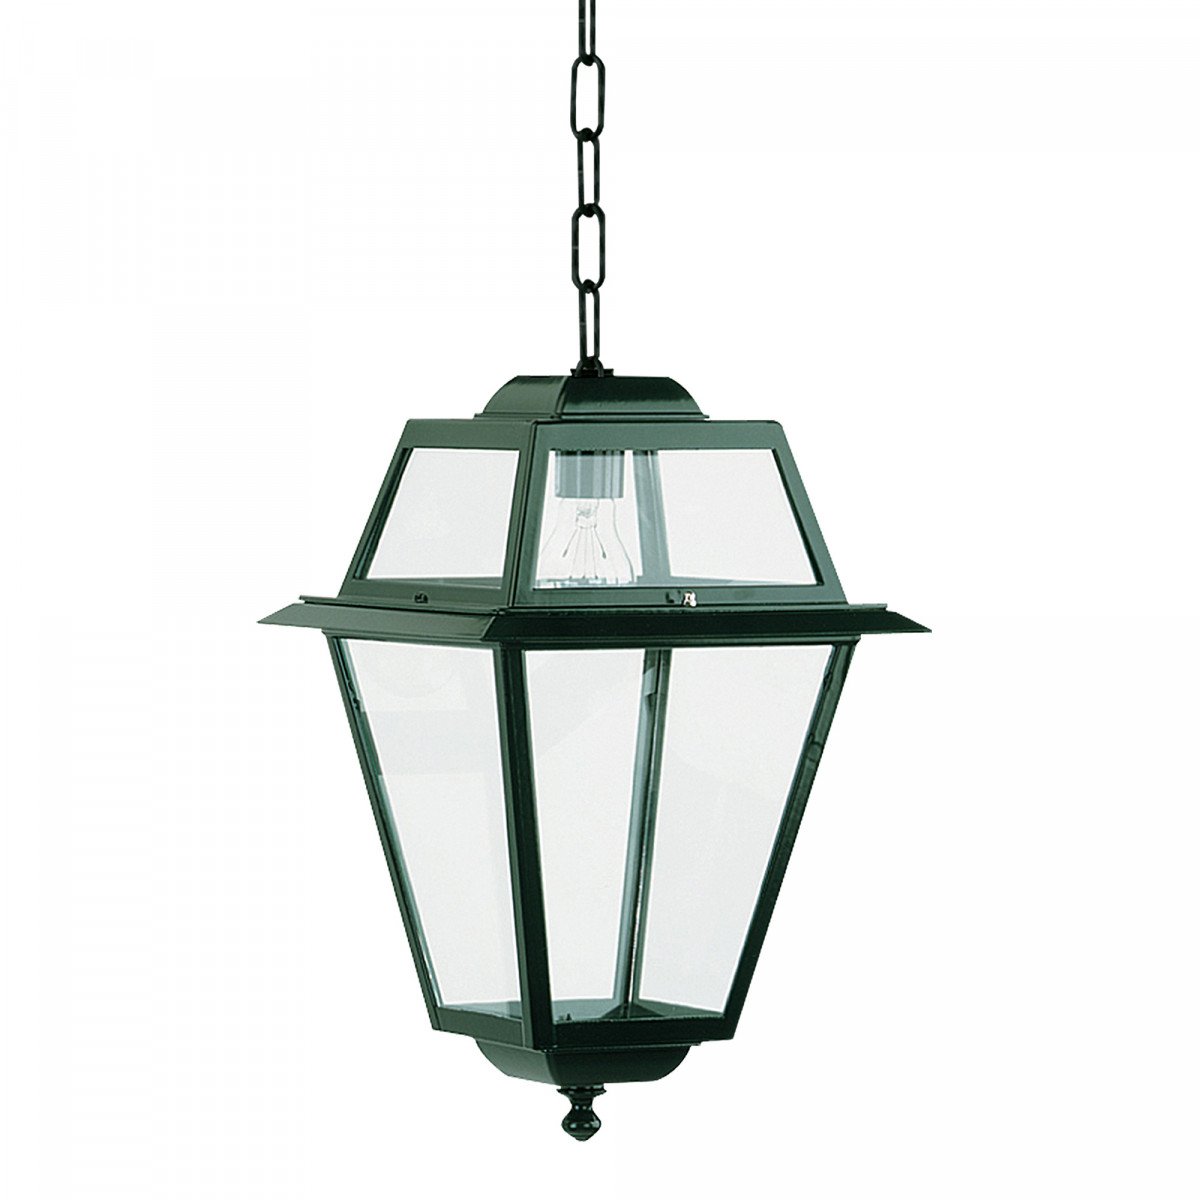 Lampe d'extérieur suspendue à chaîne K14 (1518) lanterne carrée